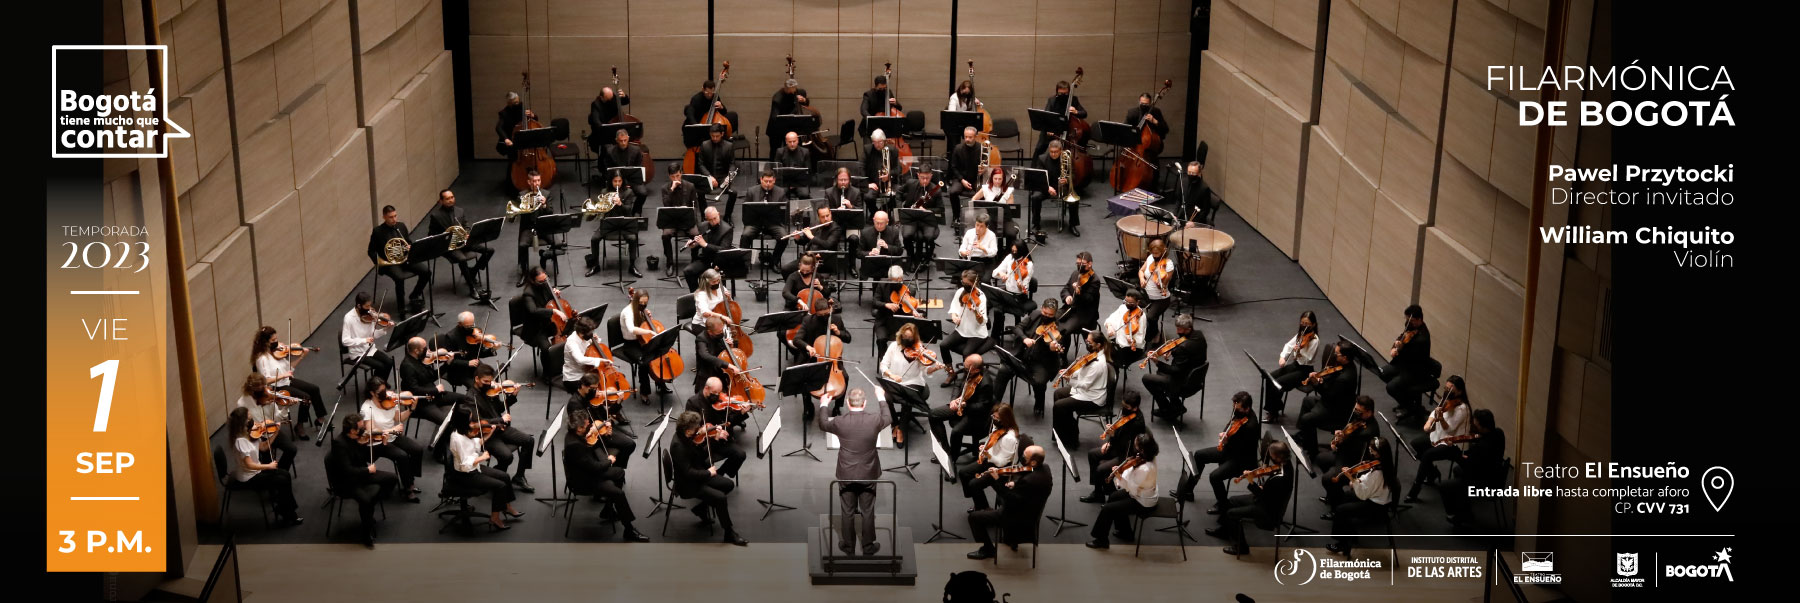 Schumann, Bruch y Liszt en interpretación de la Filarmónica de Bogotá